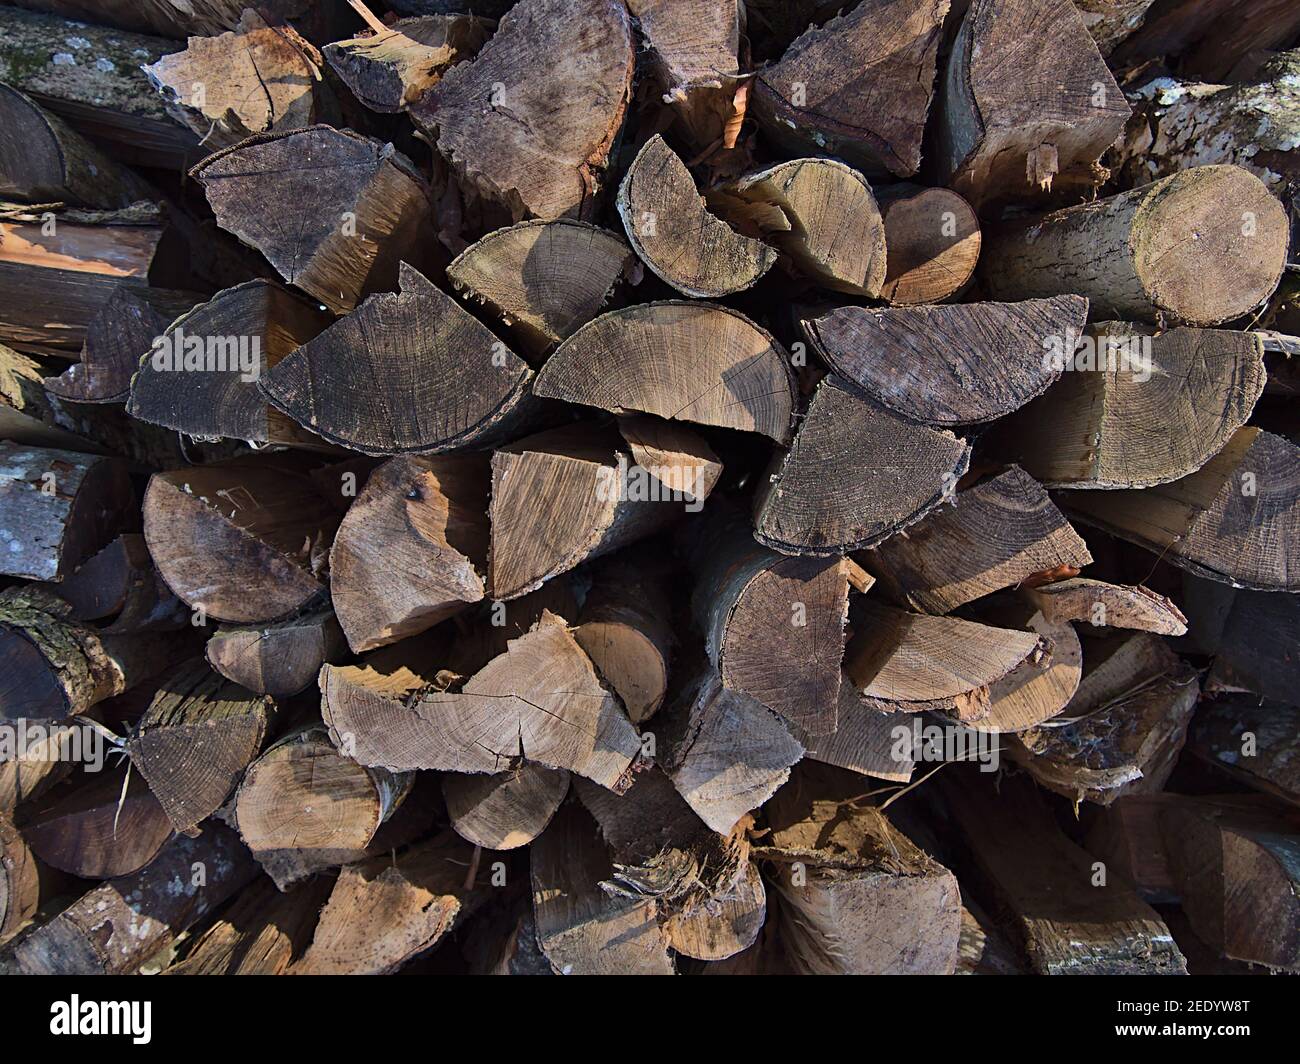 Vista de primer plano de la pila de madera con troncos cortados con textura de madera y anillos de edad visibles en un bosque de Swabian Alb, Alemania. Enfoque en el centro. Foto de stock